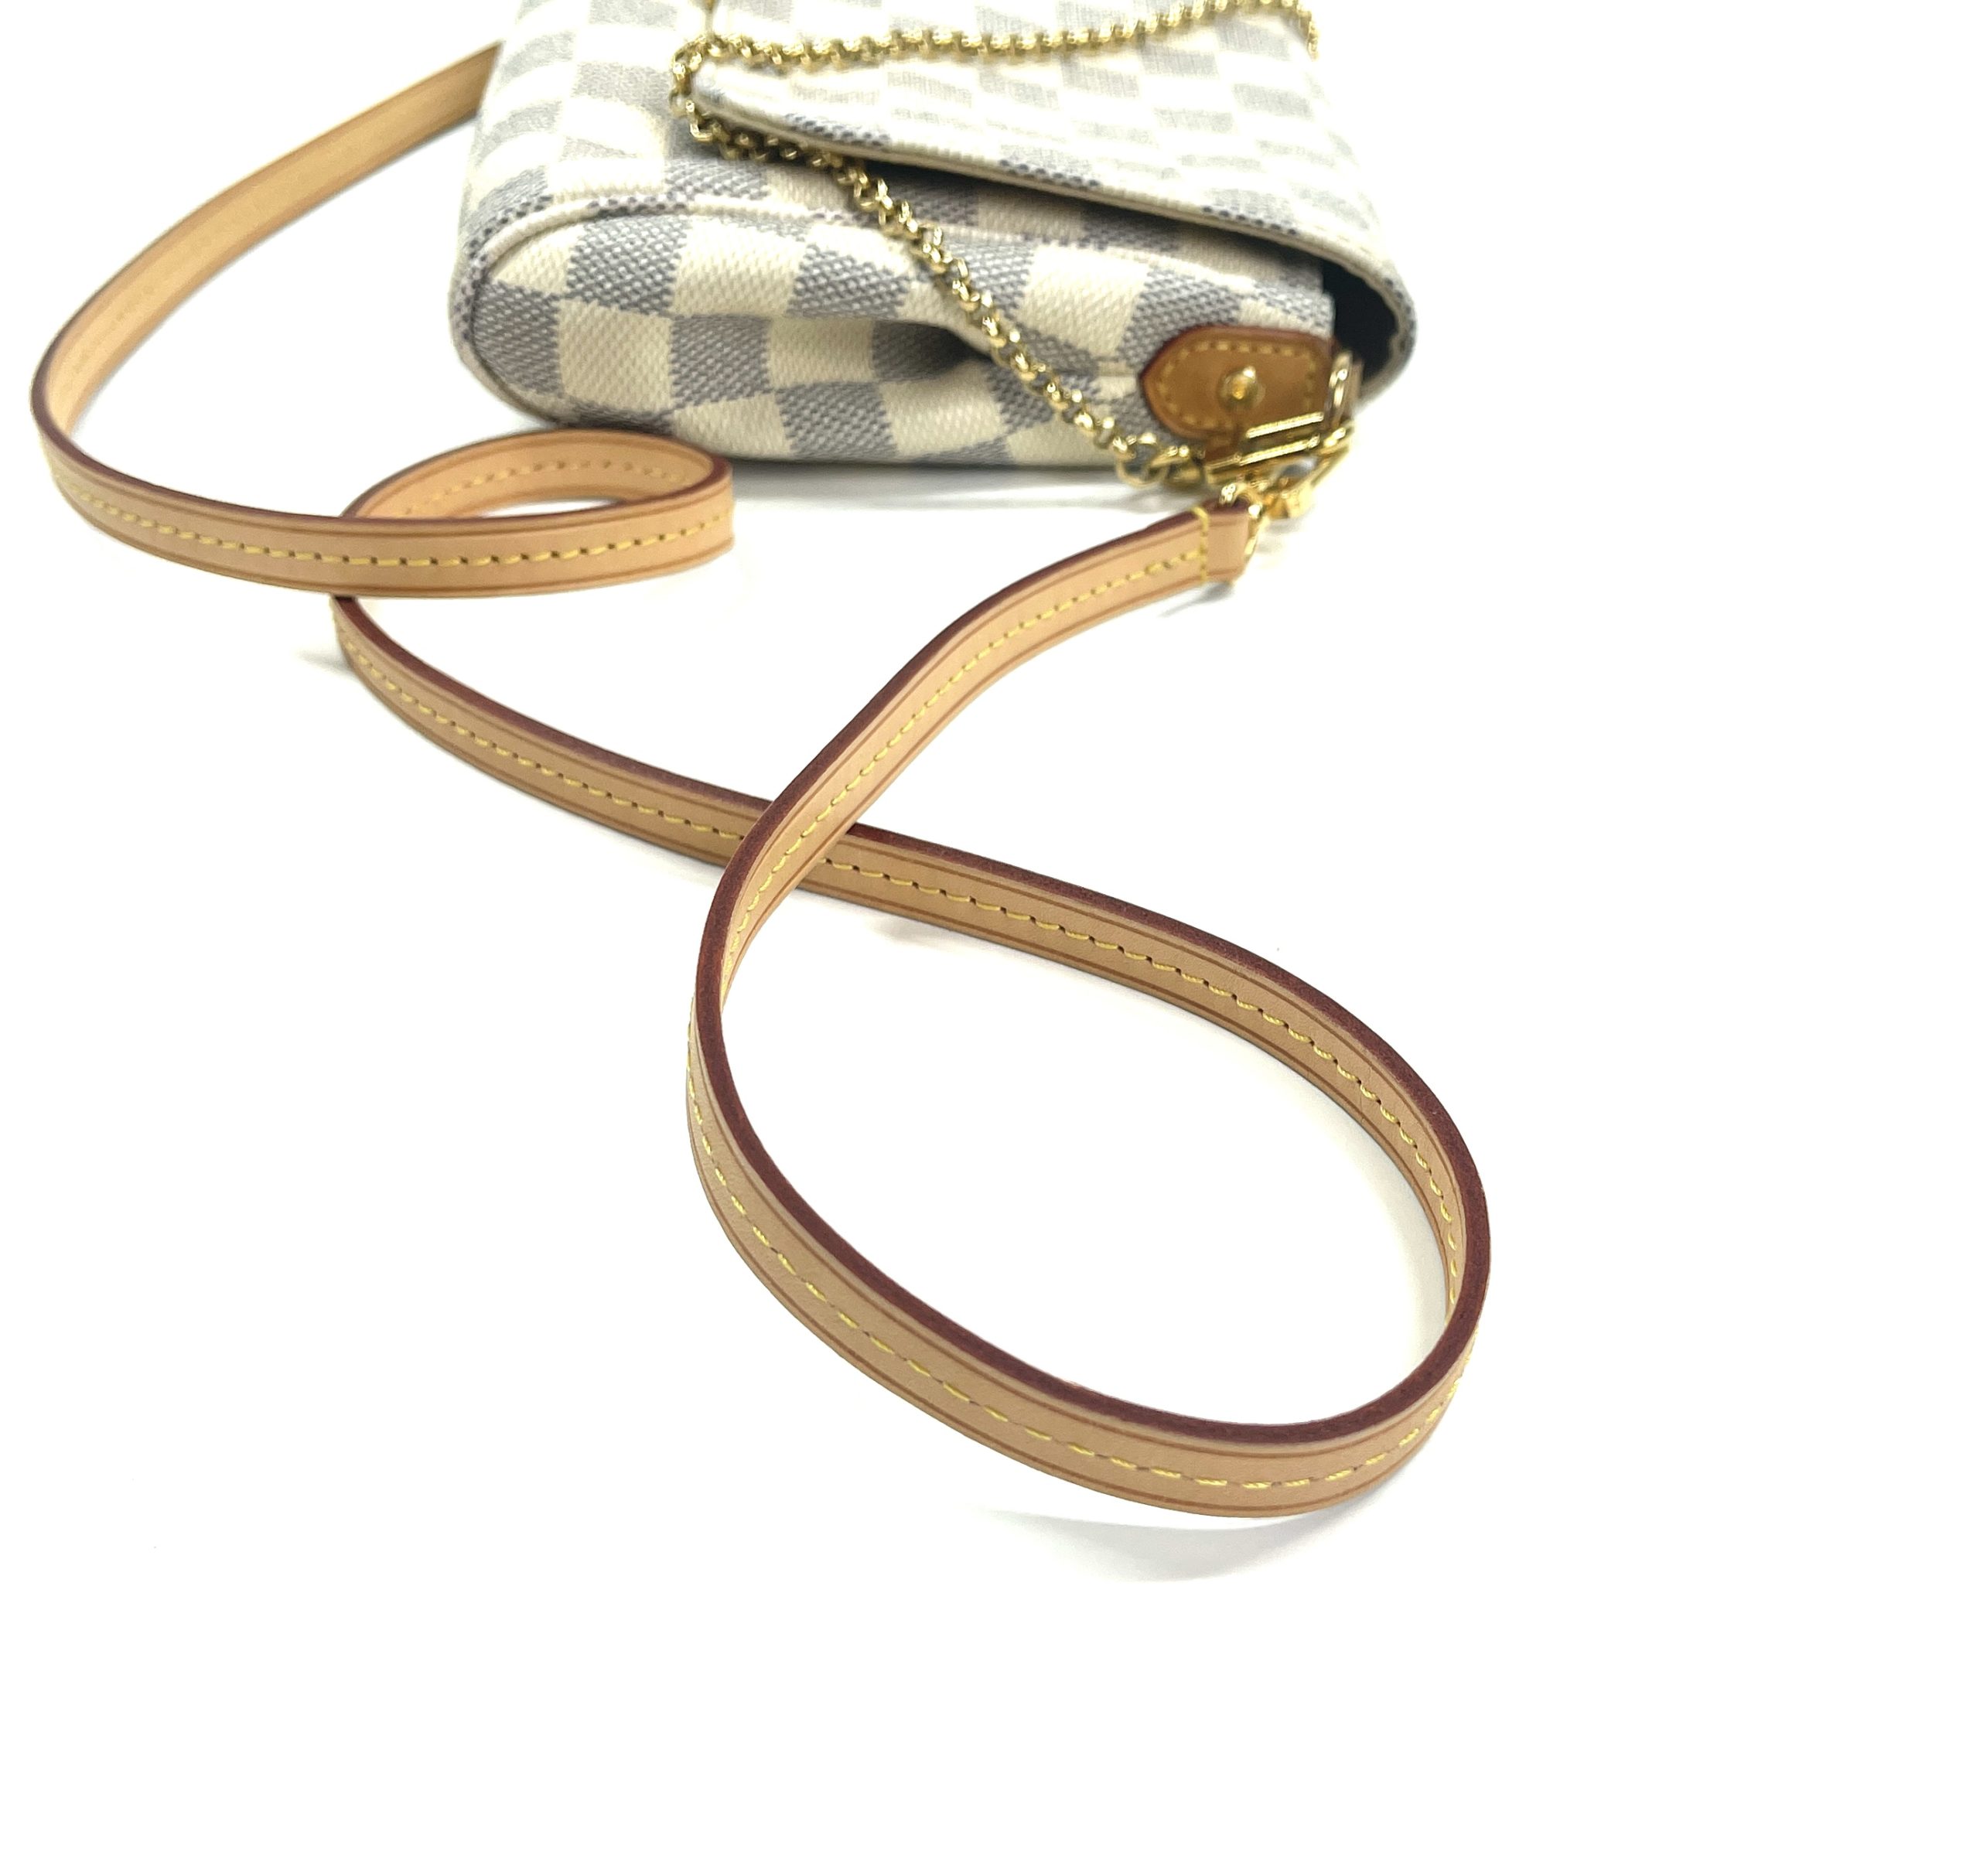 Louis Vuitton Damier Azur Favorite MM Shoulder Bag (SHF-21615